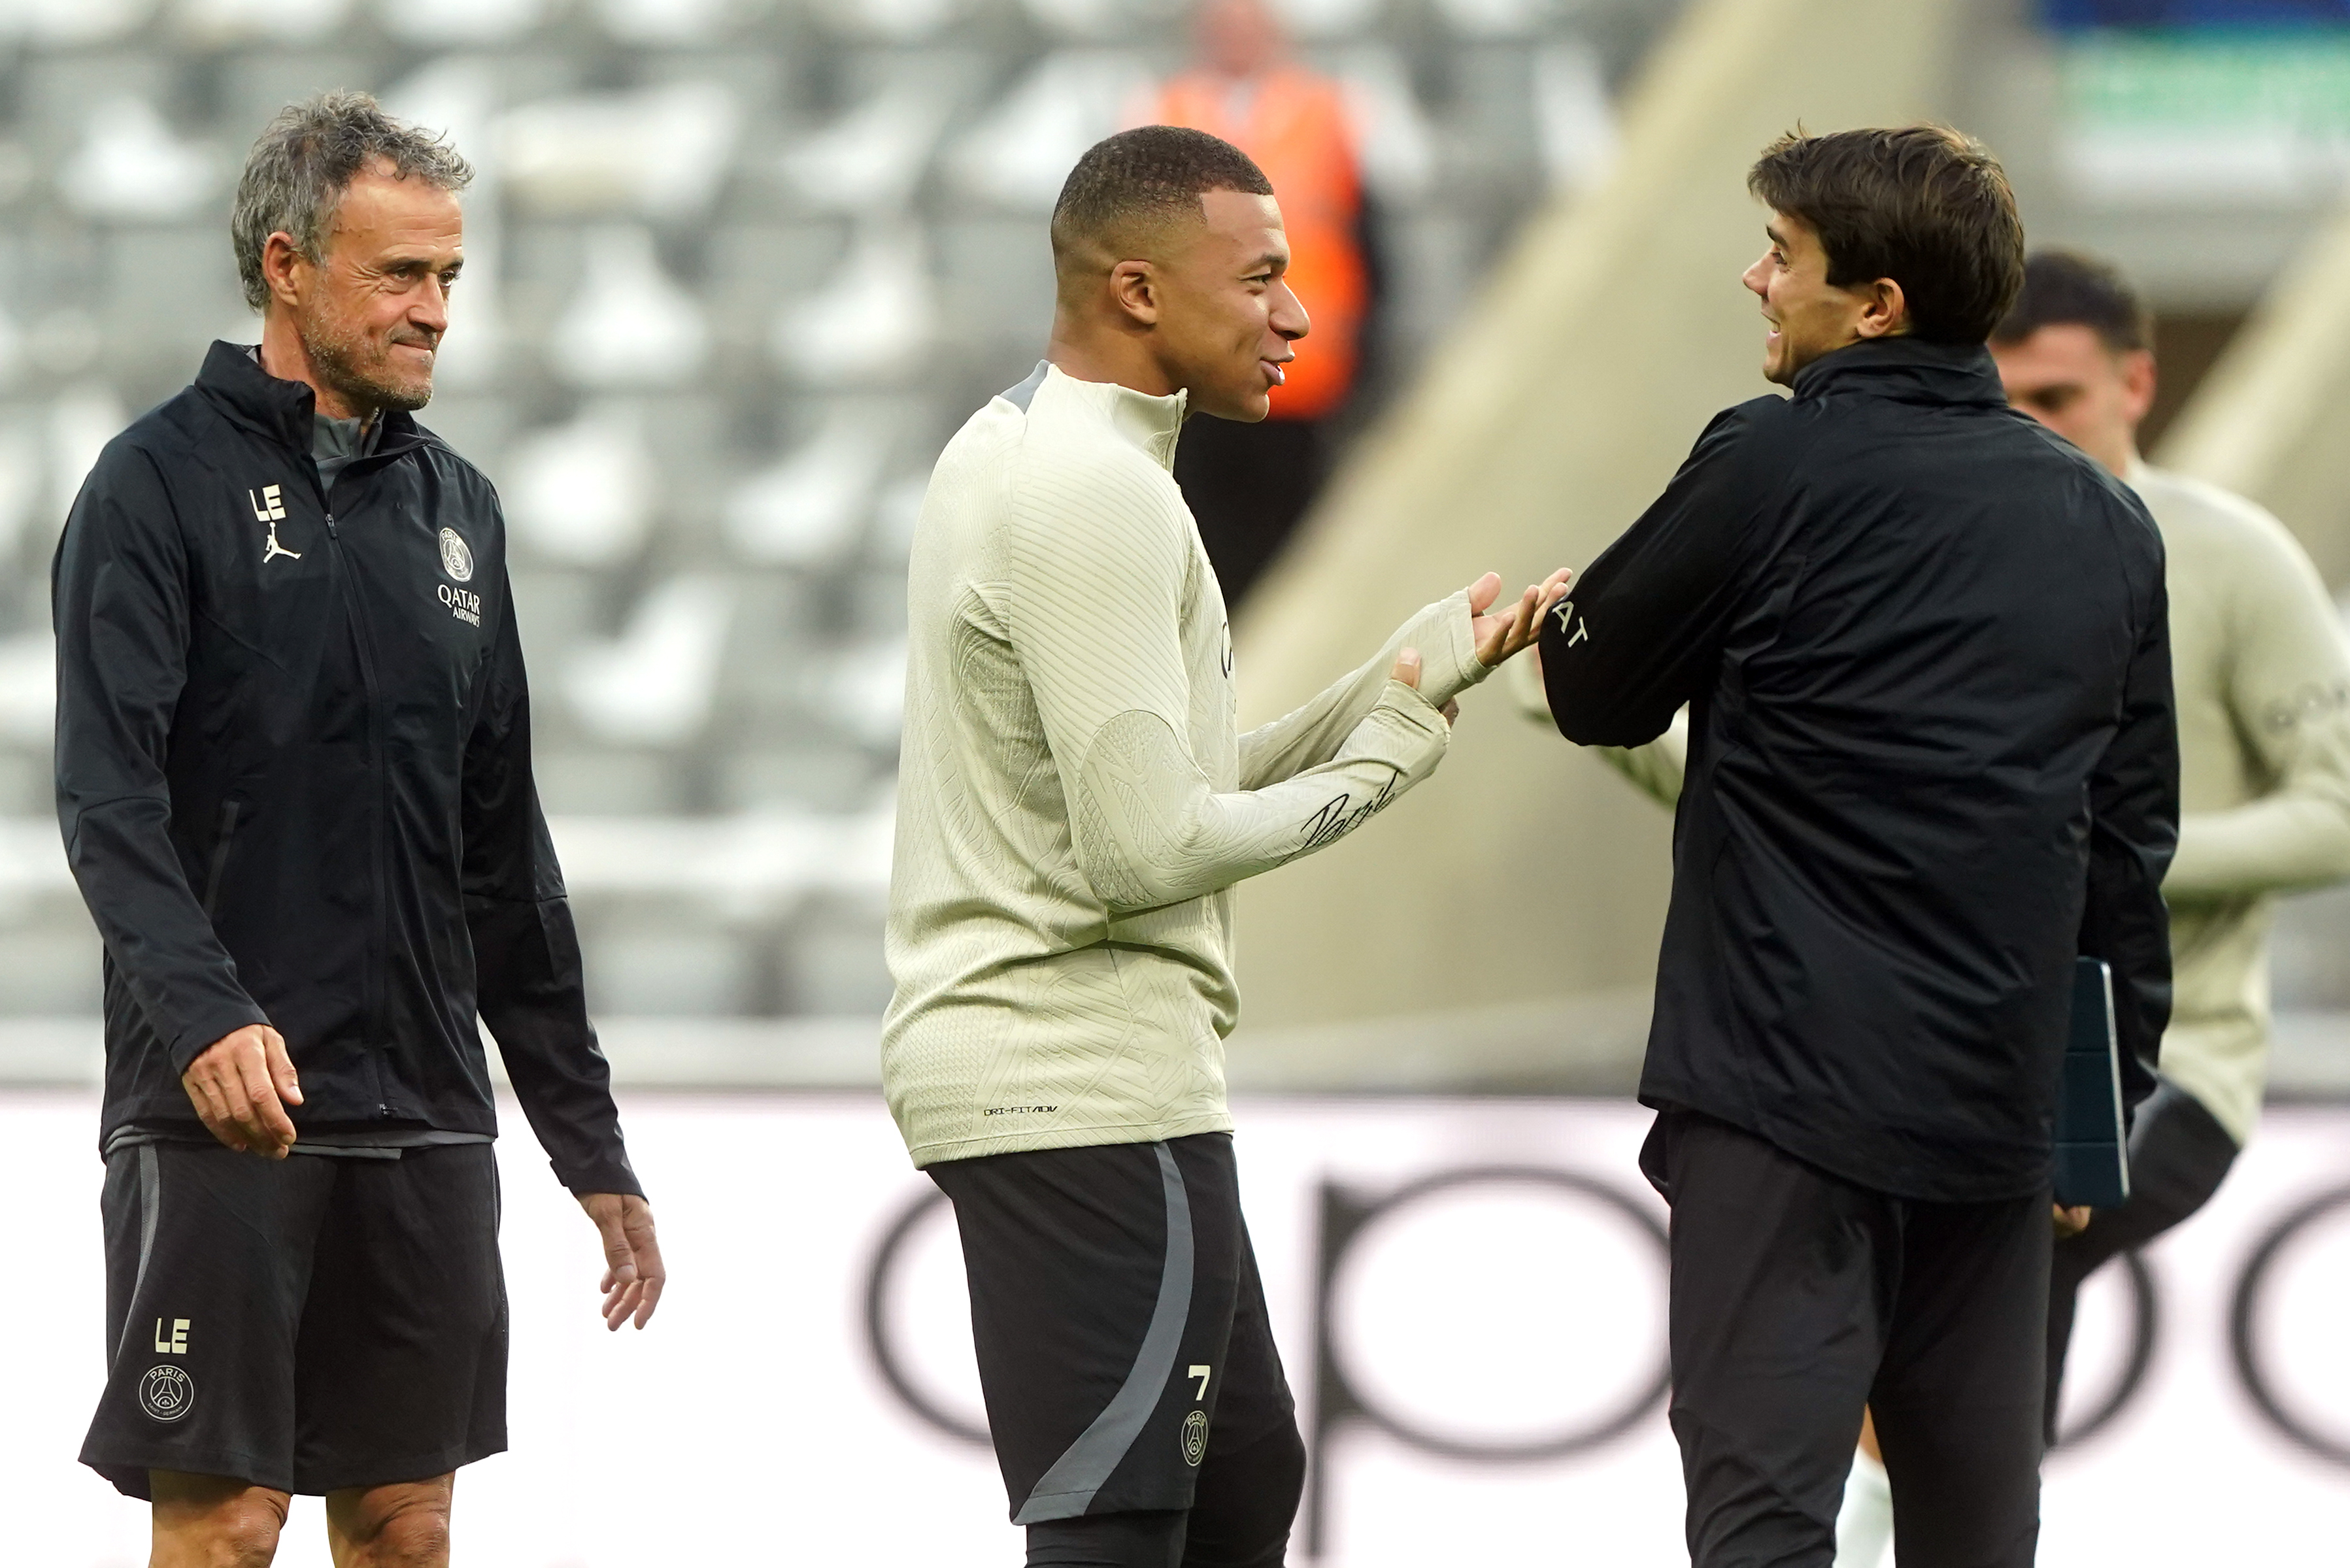 Paris Saint-Germain’s Kylian Mbappe (centre) with manager Luis Enrique (left) during a training session